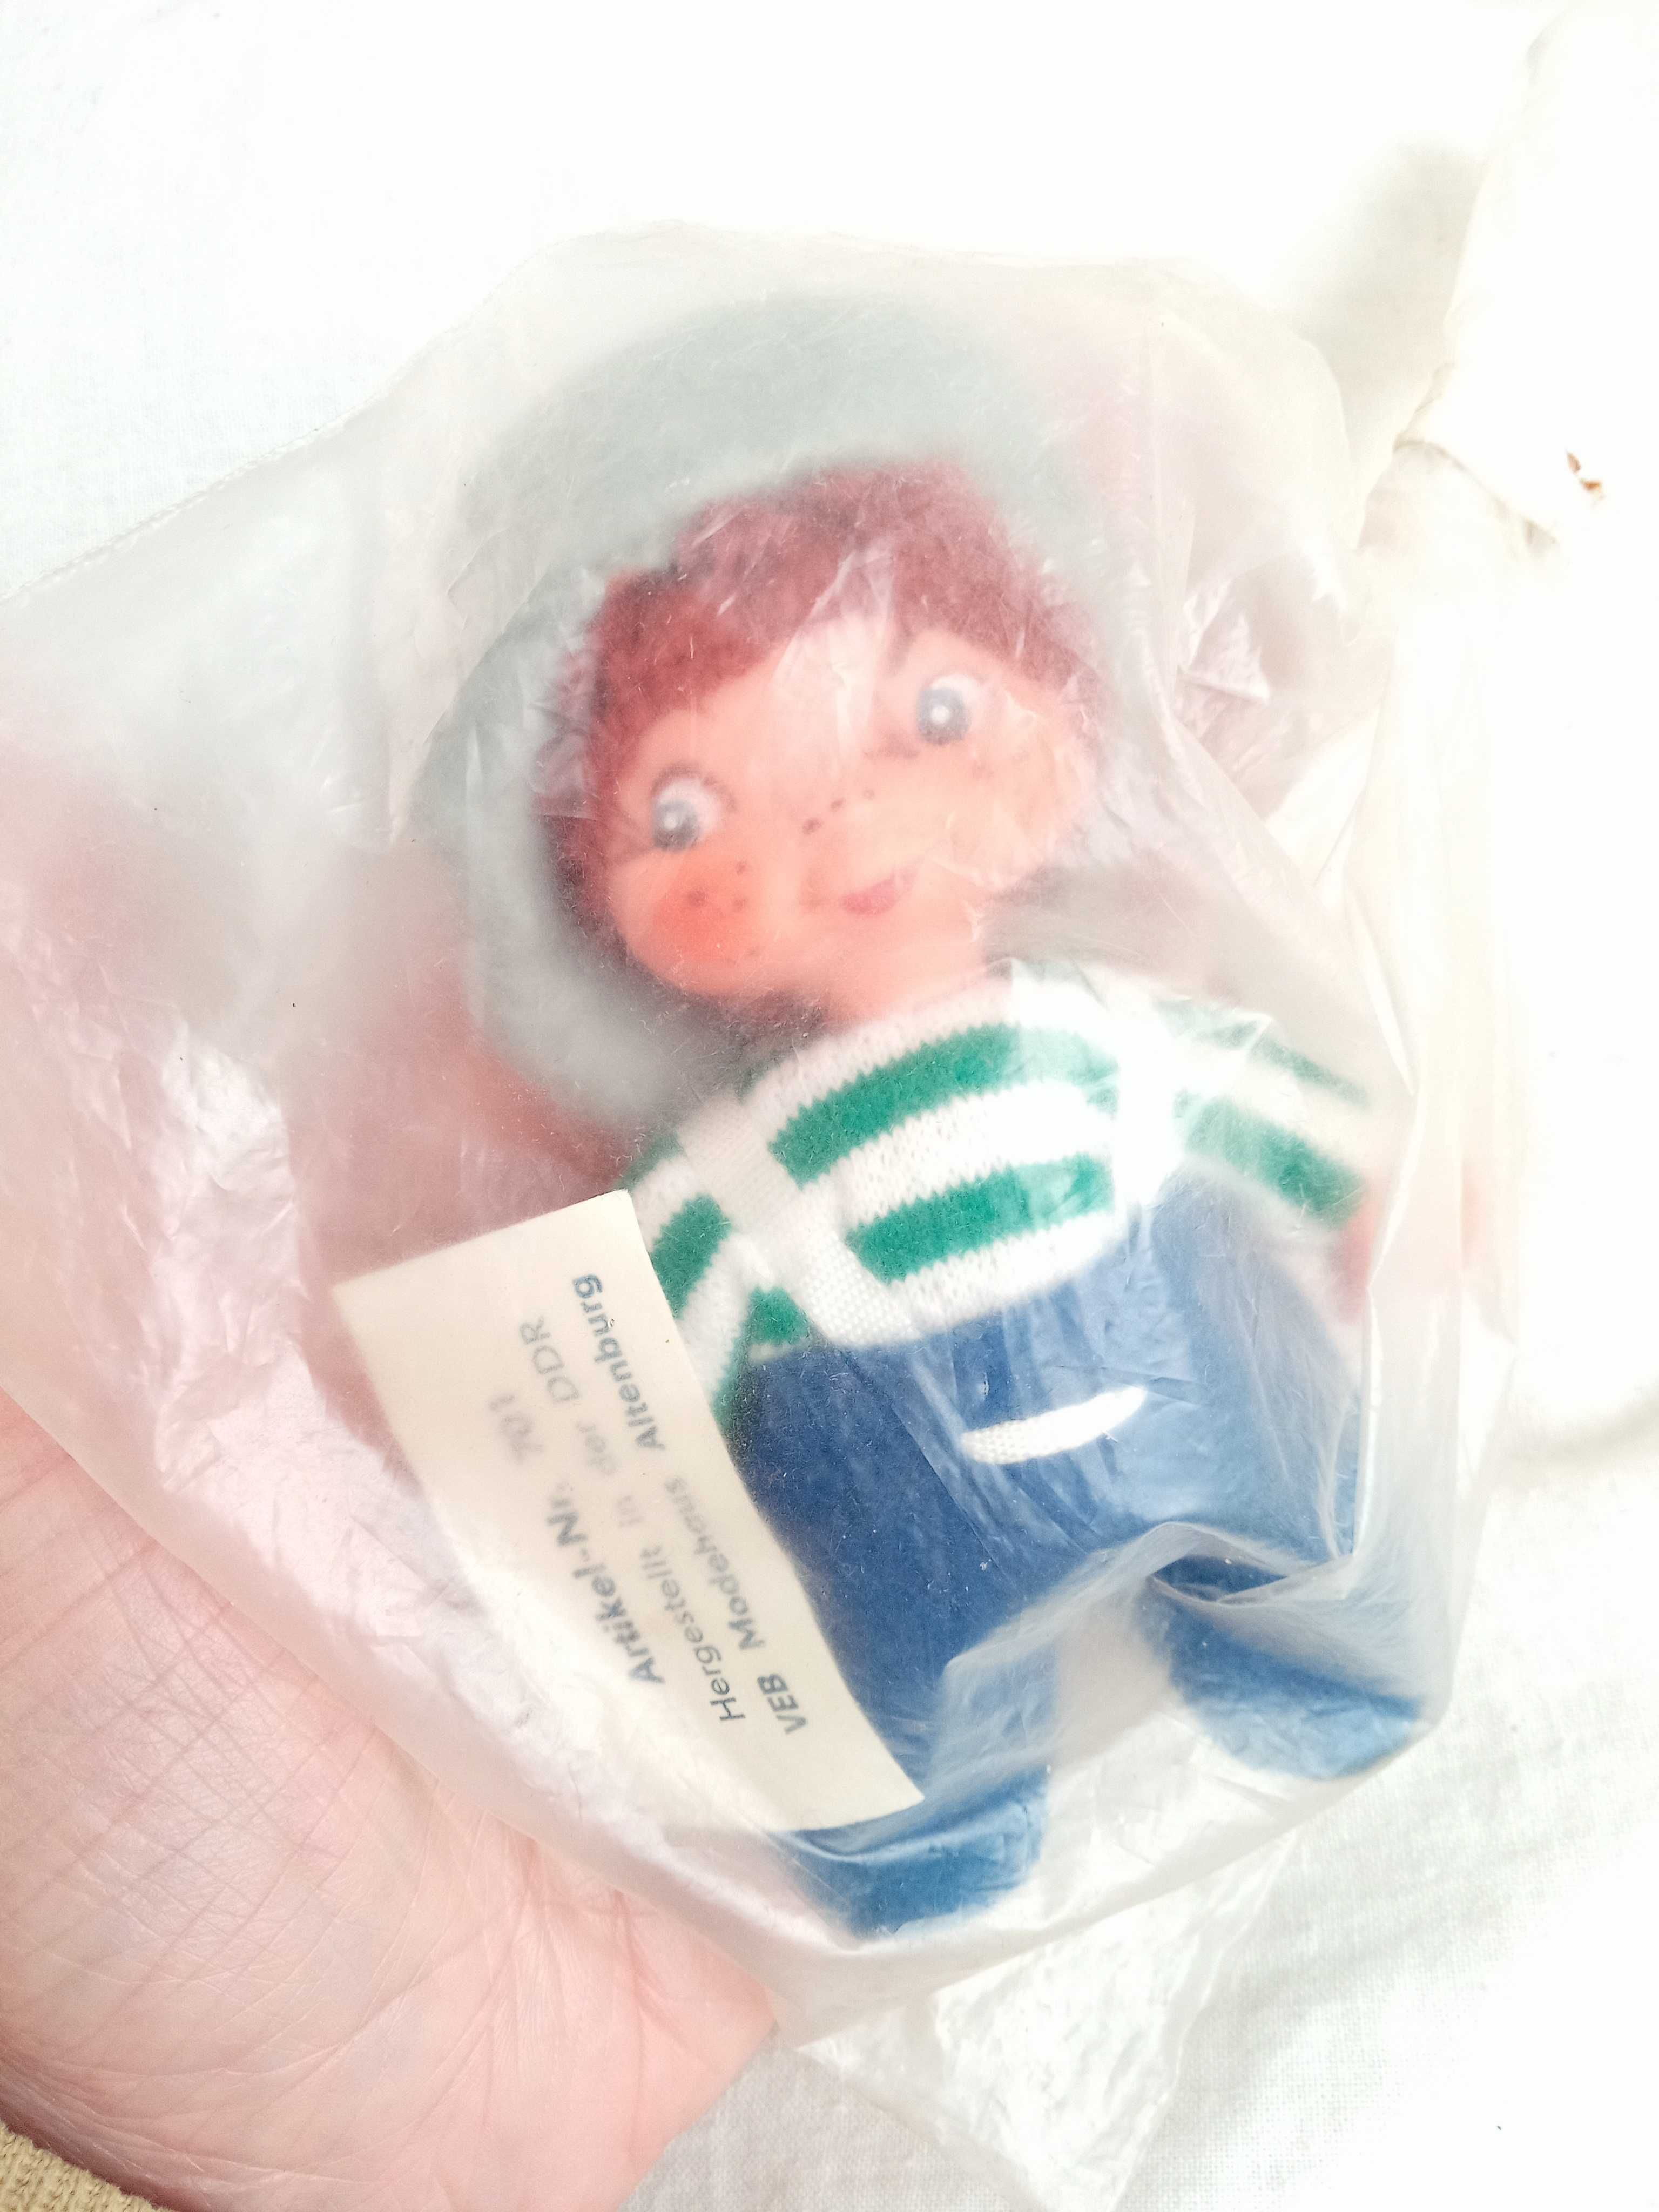 Игрушка кукла іграшка колекційна стара Германія Кривоножка винтаж